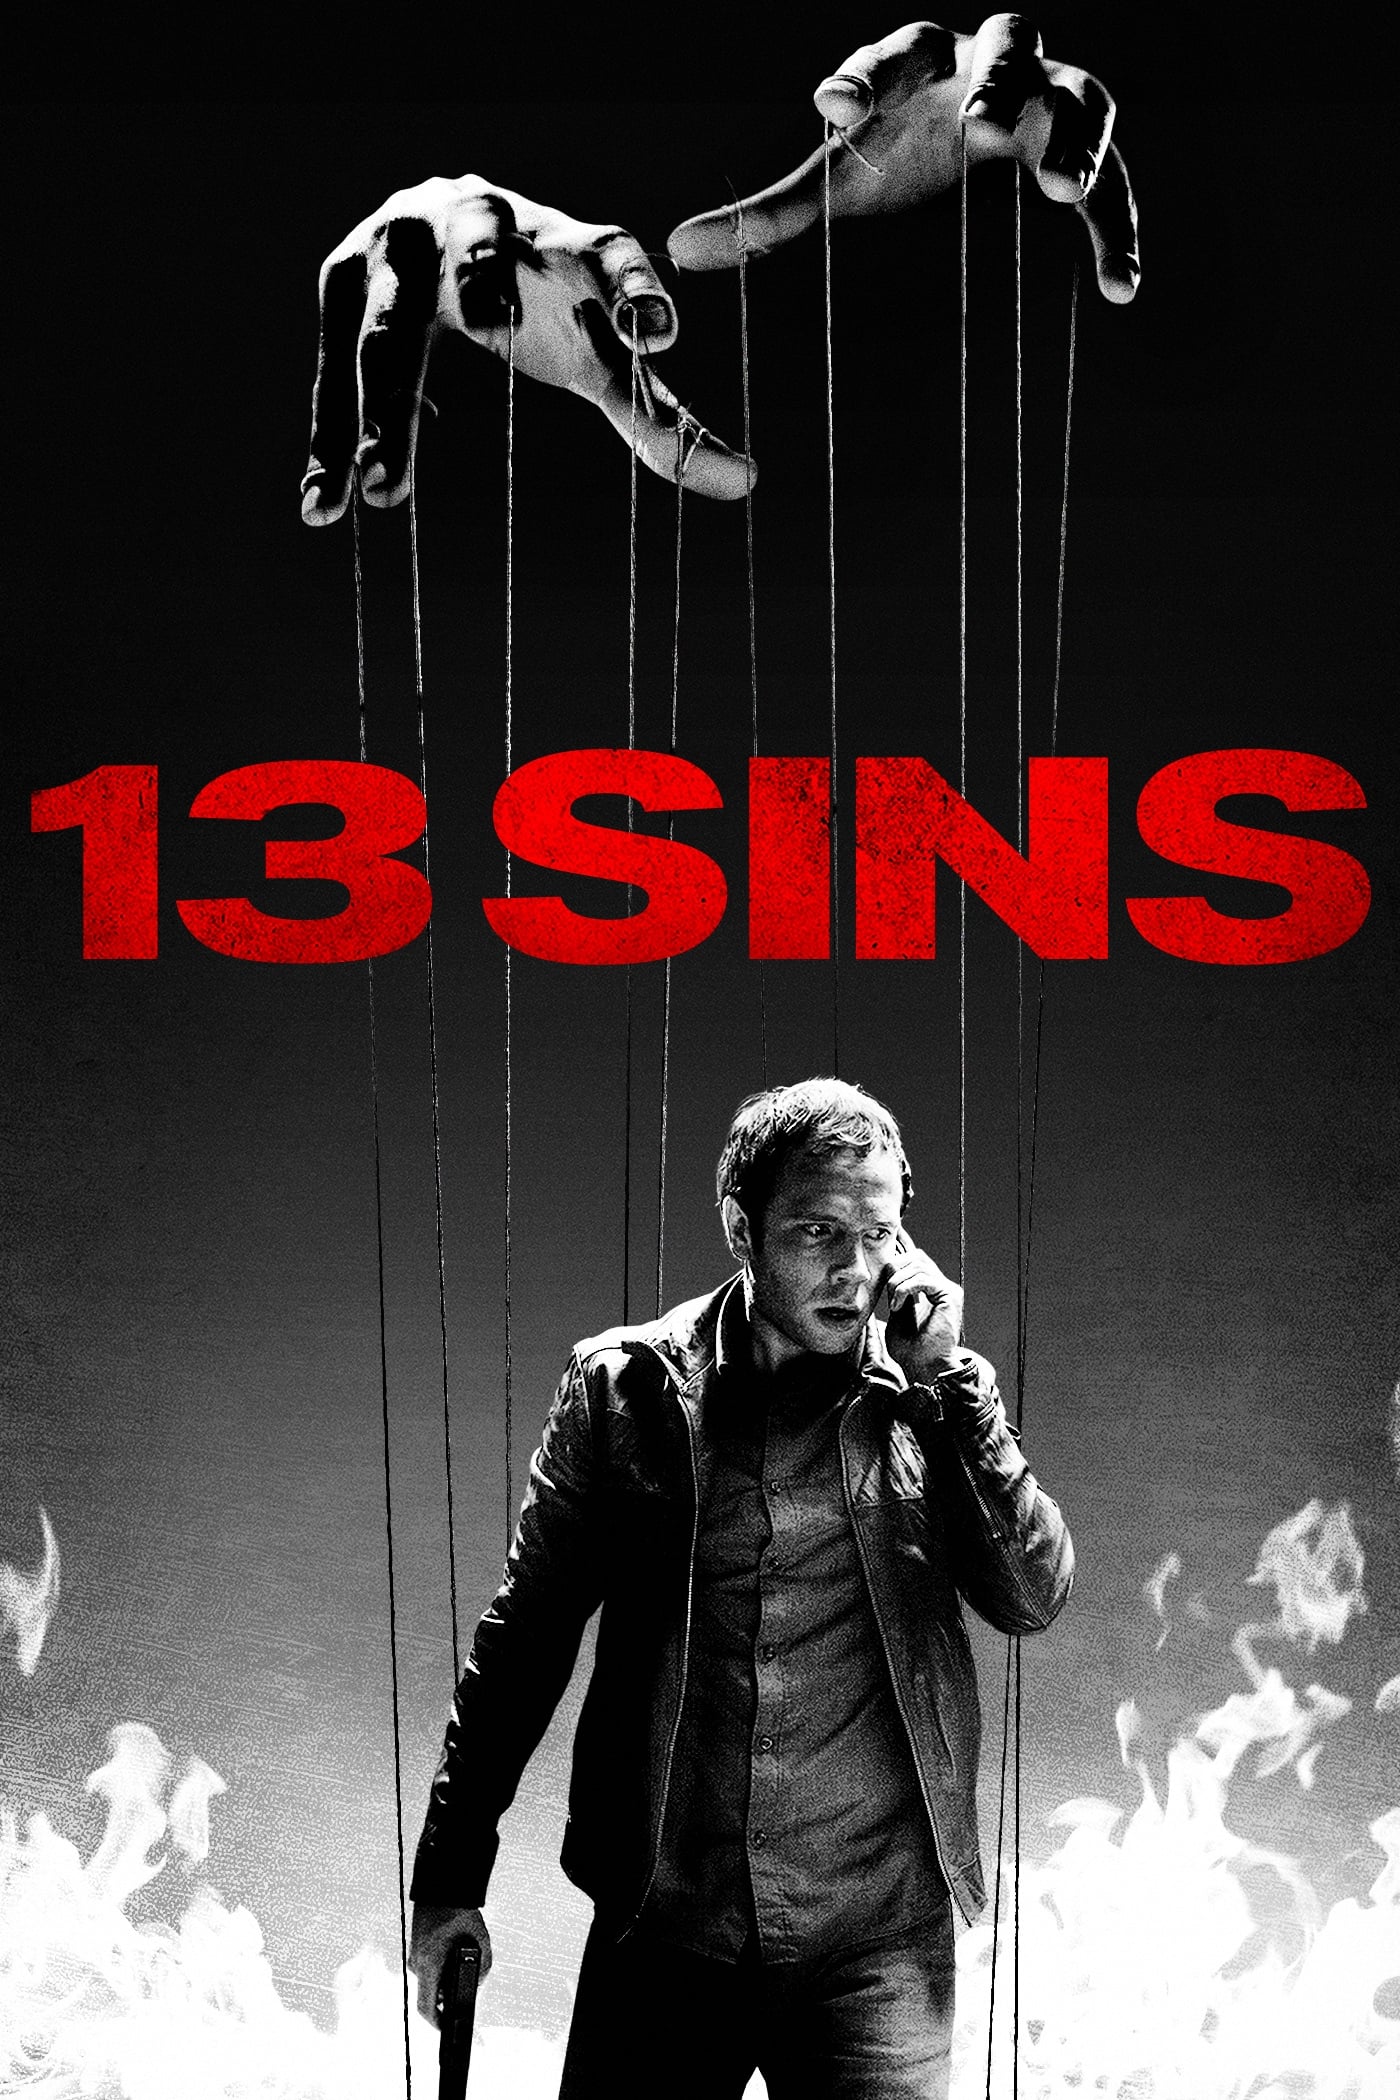 13 Sins - Spiel des Todes